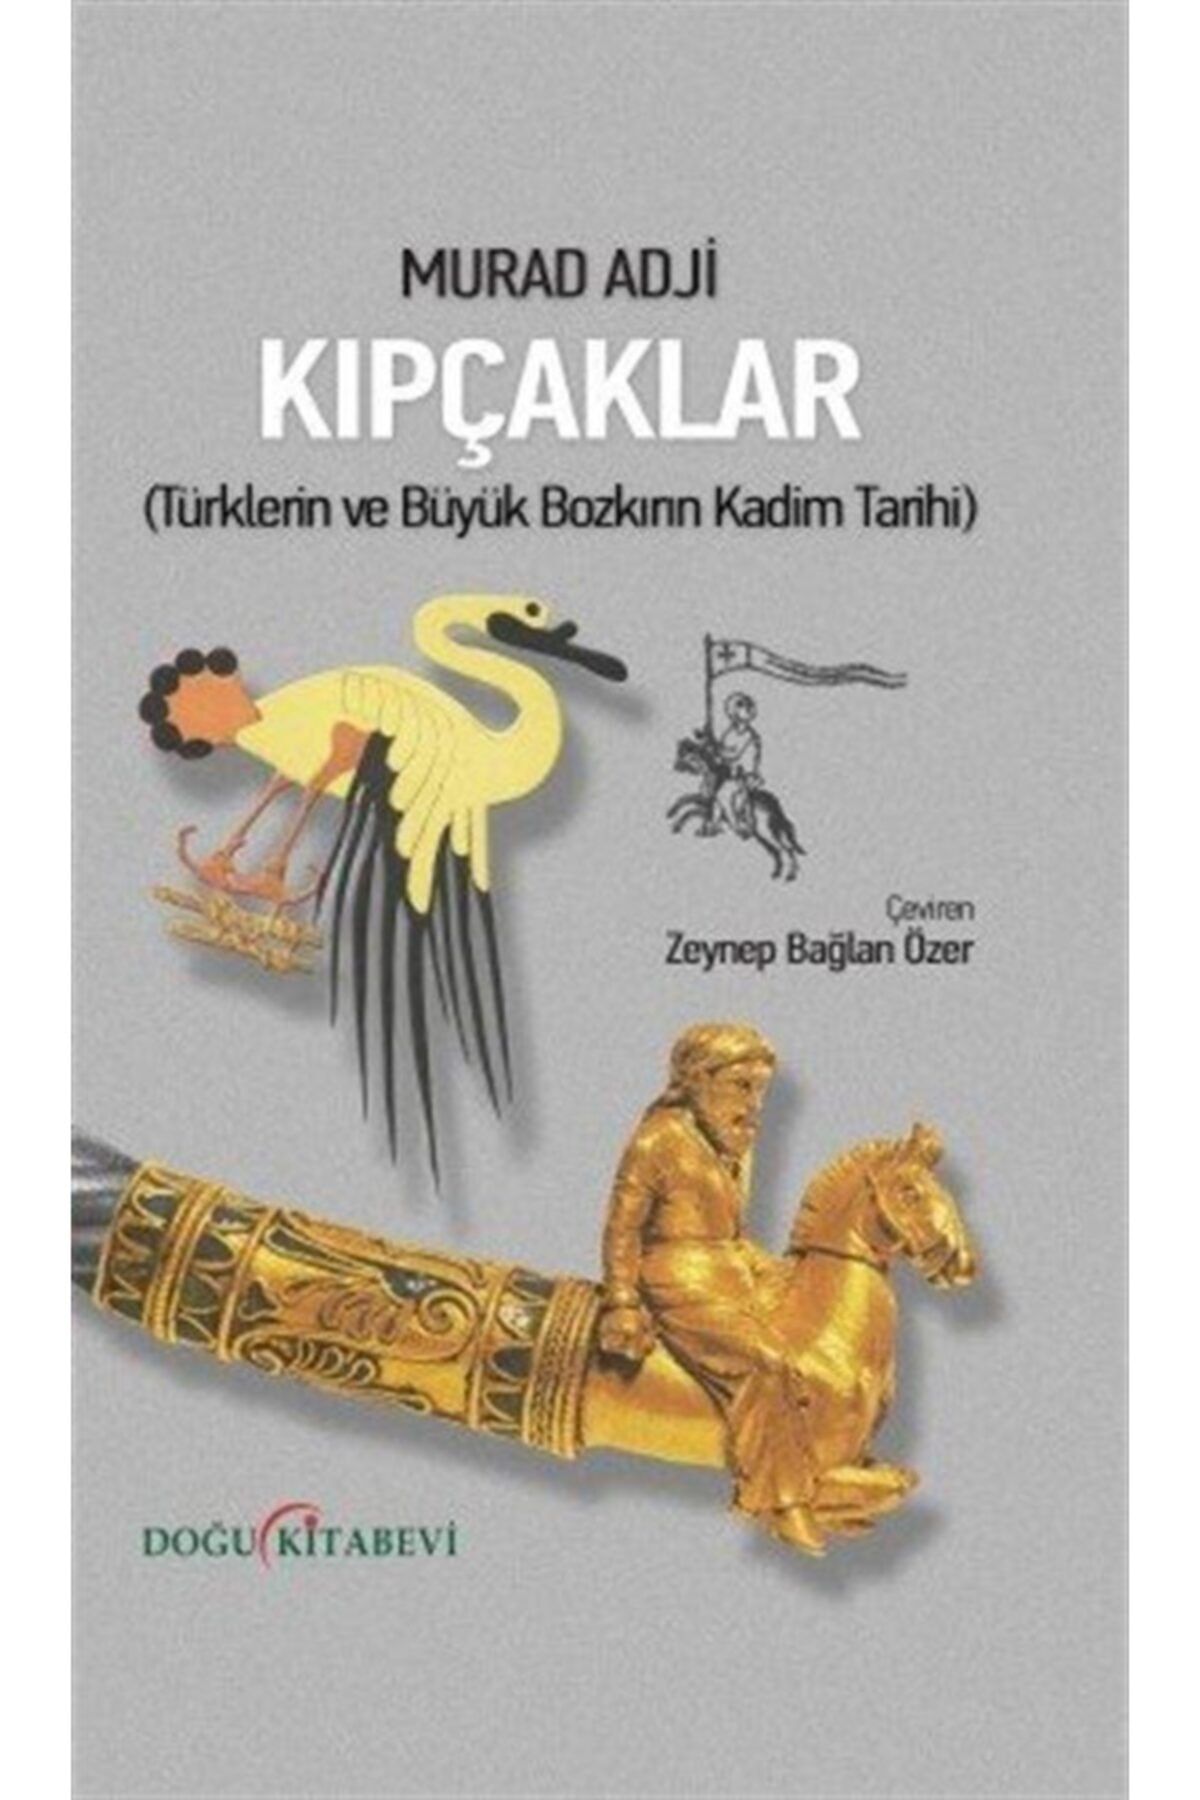 Doğu Kitabevi Kıpçaklar & Türklerin Ve Büyük Bozkırın Kadim Tarihi